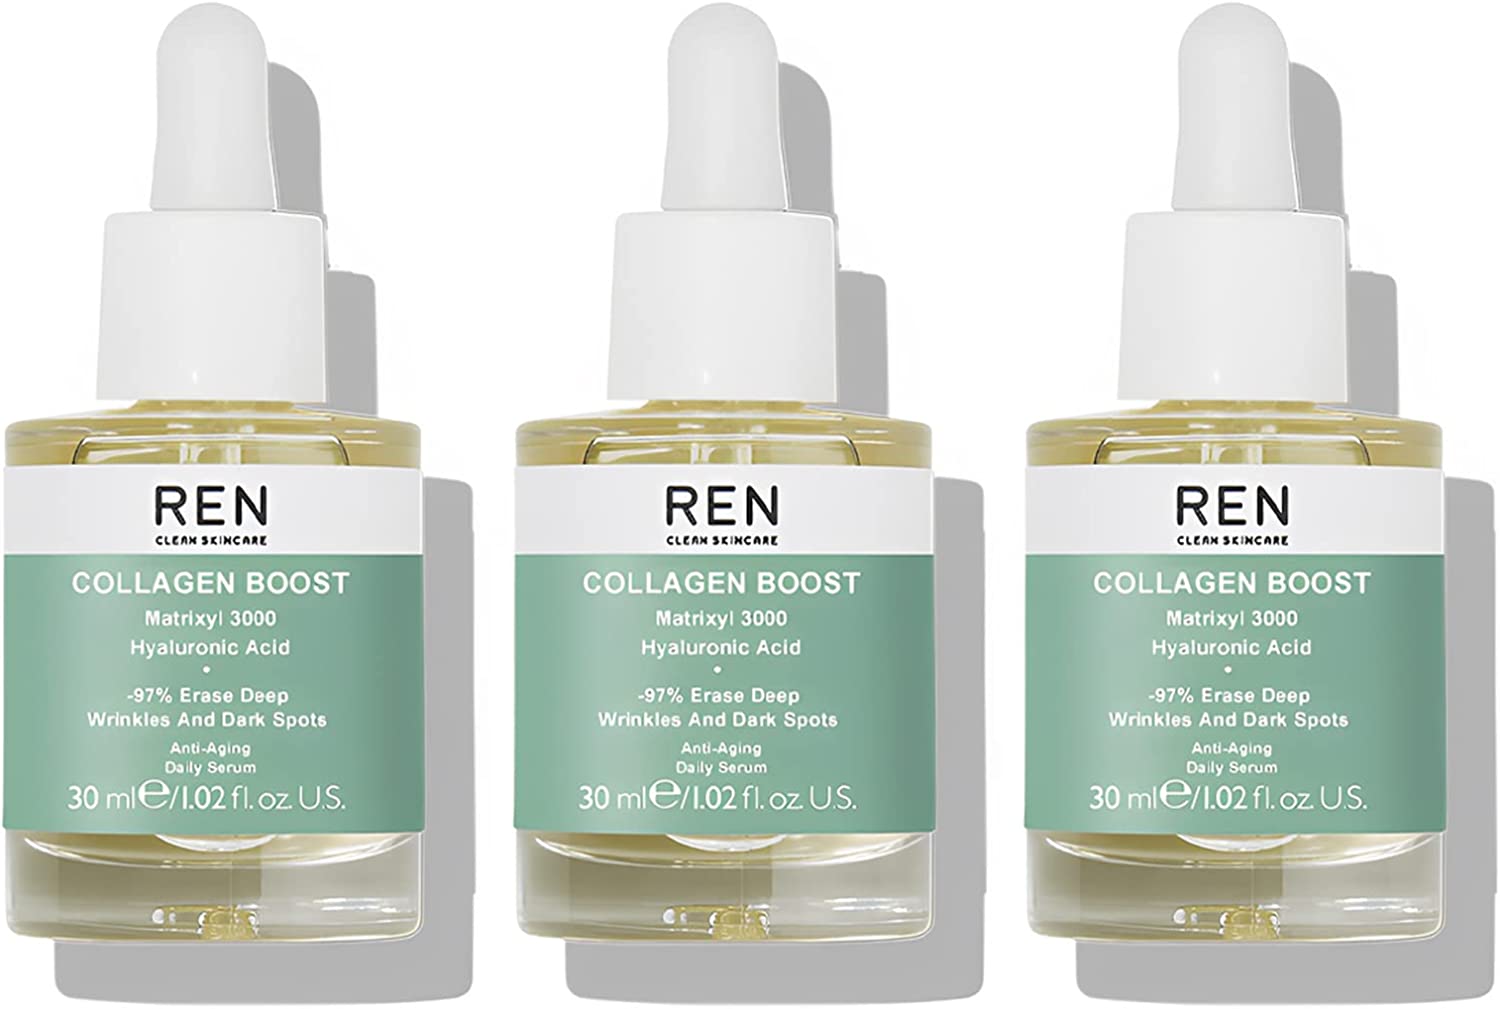 REN Collagen Boost Reviews